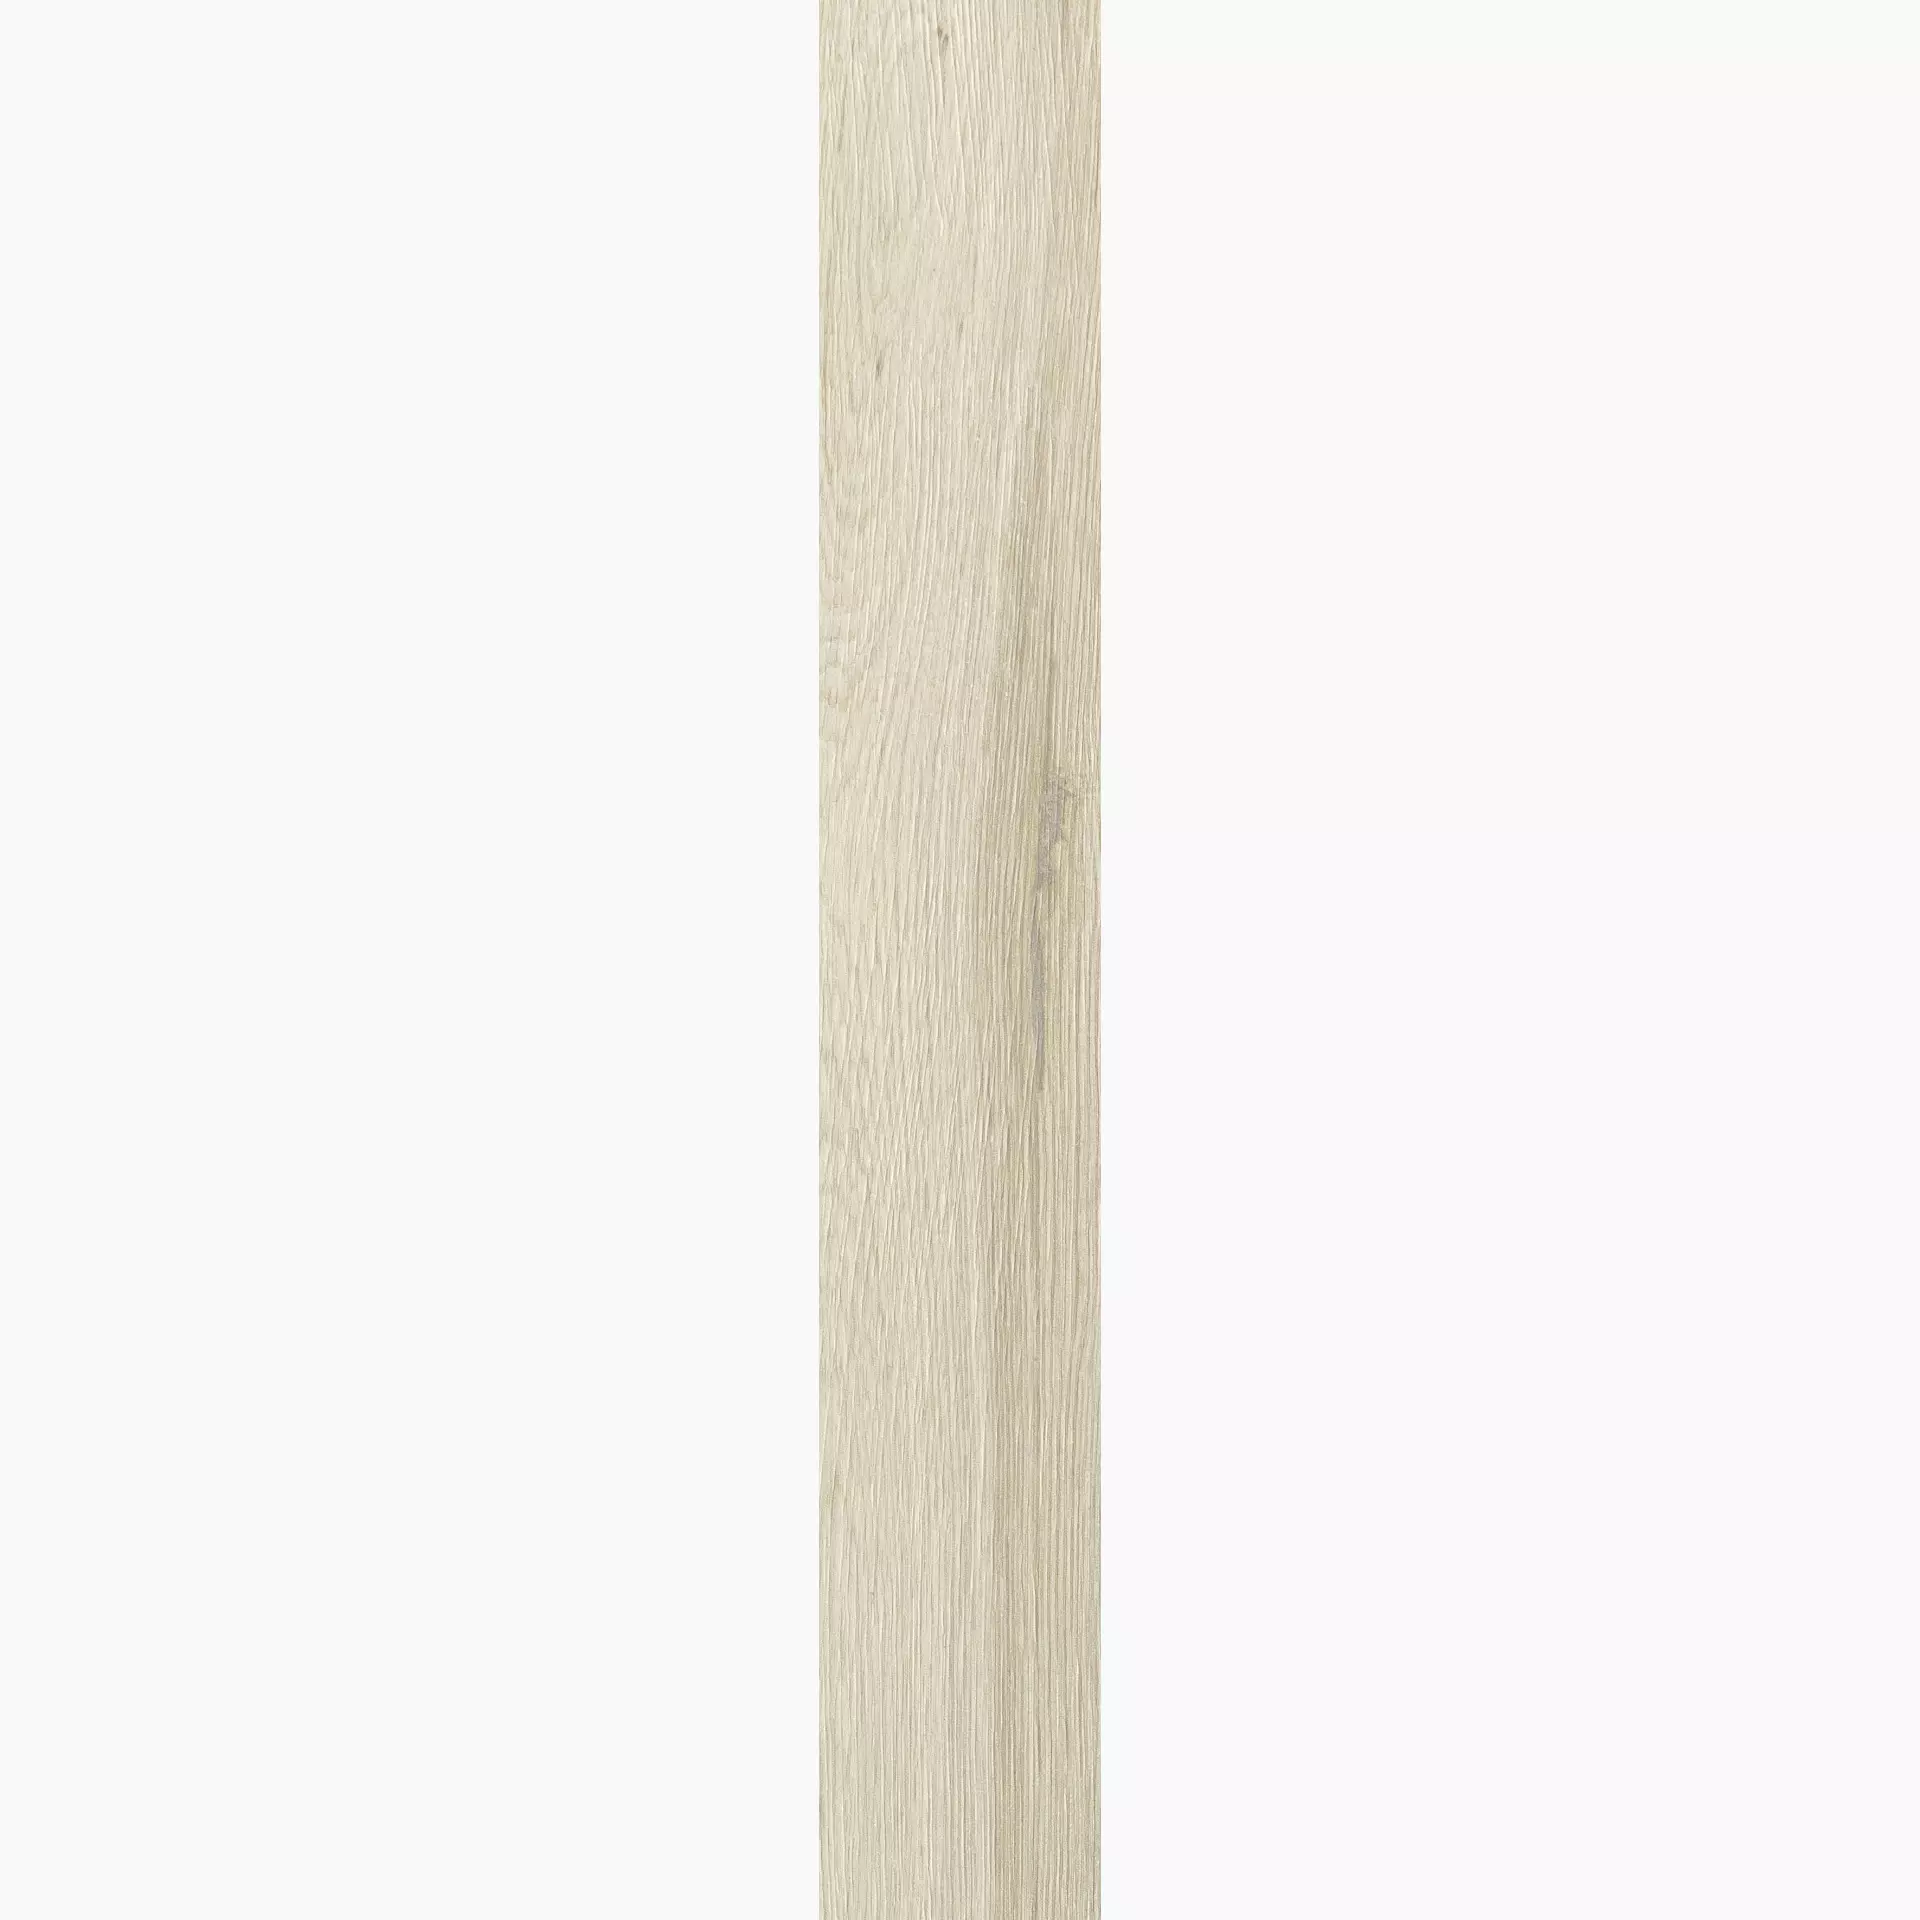 Florim Planches De Rex Amande Naturale – Matt Amande 755693 matt natur 26,5x180cm rektifiziert 9mm